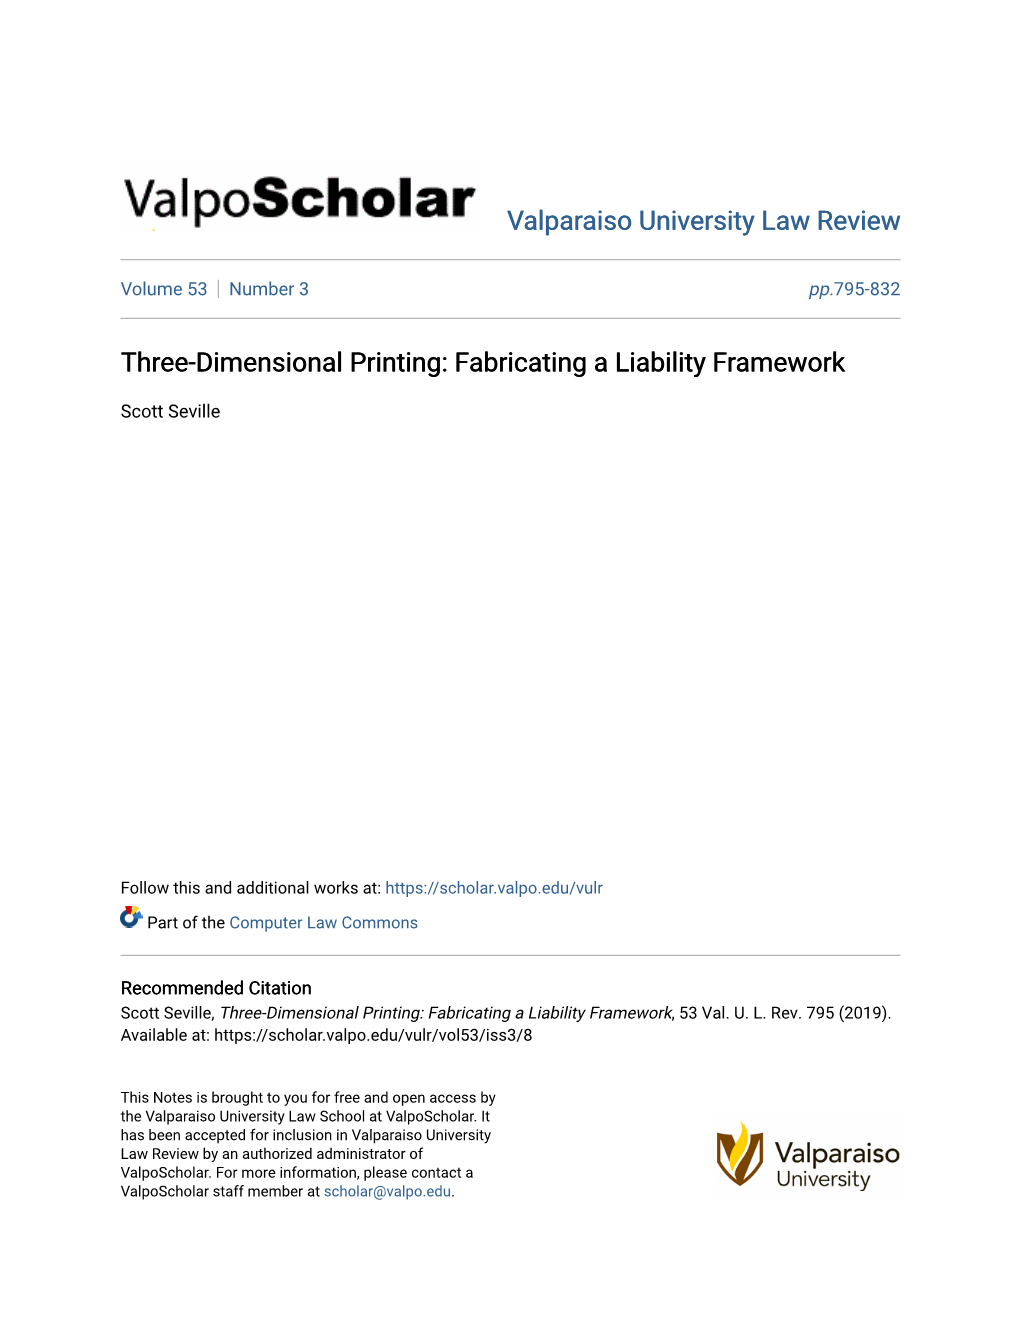 Three-Dimensional Printing: Fabricating a Liability Framework